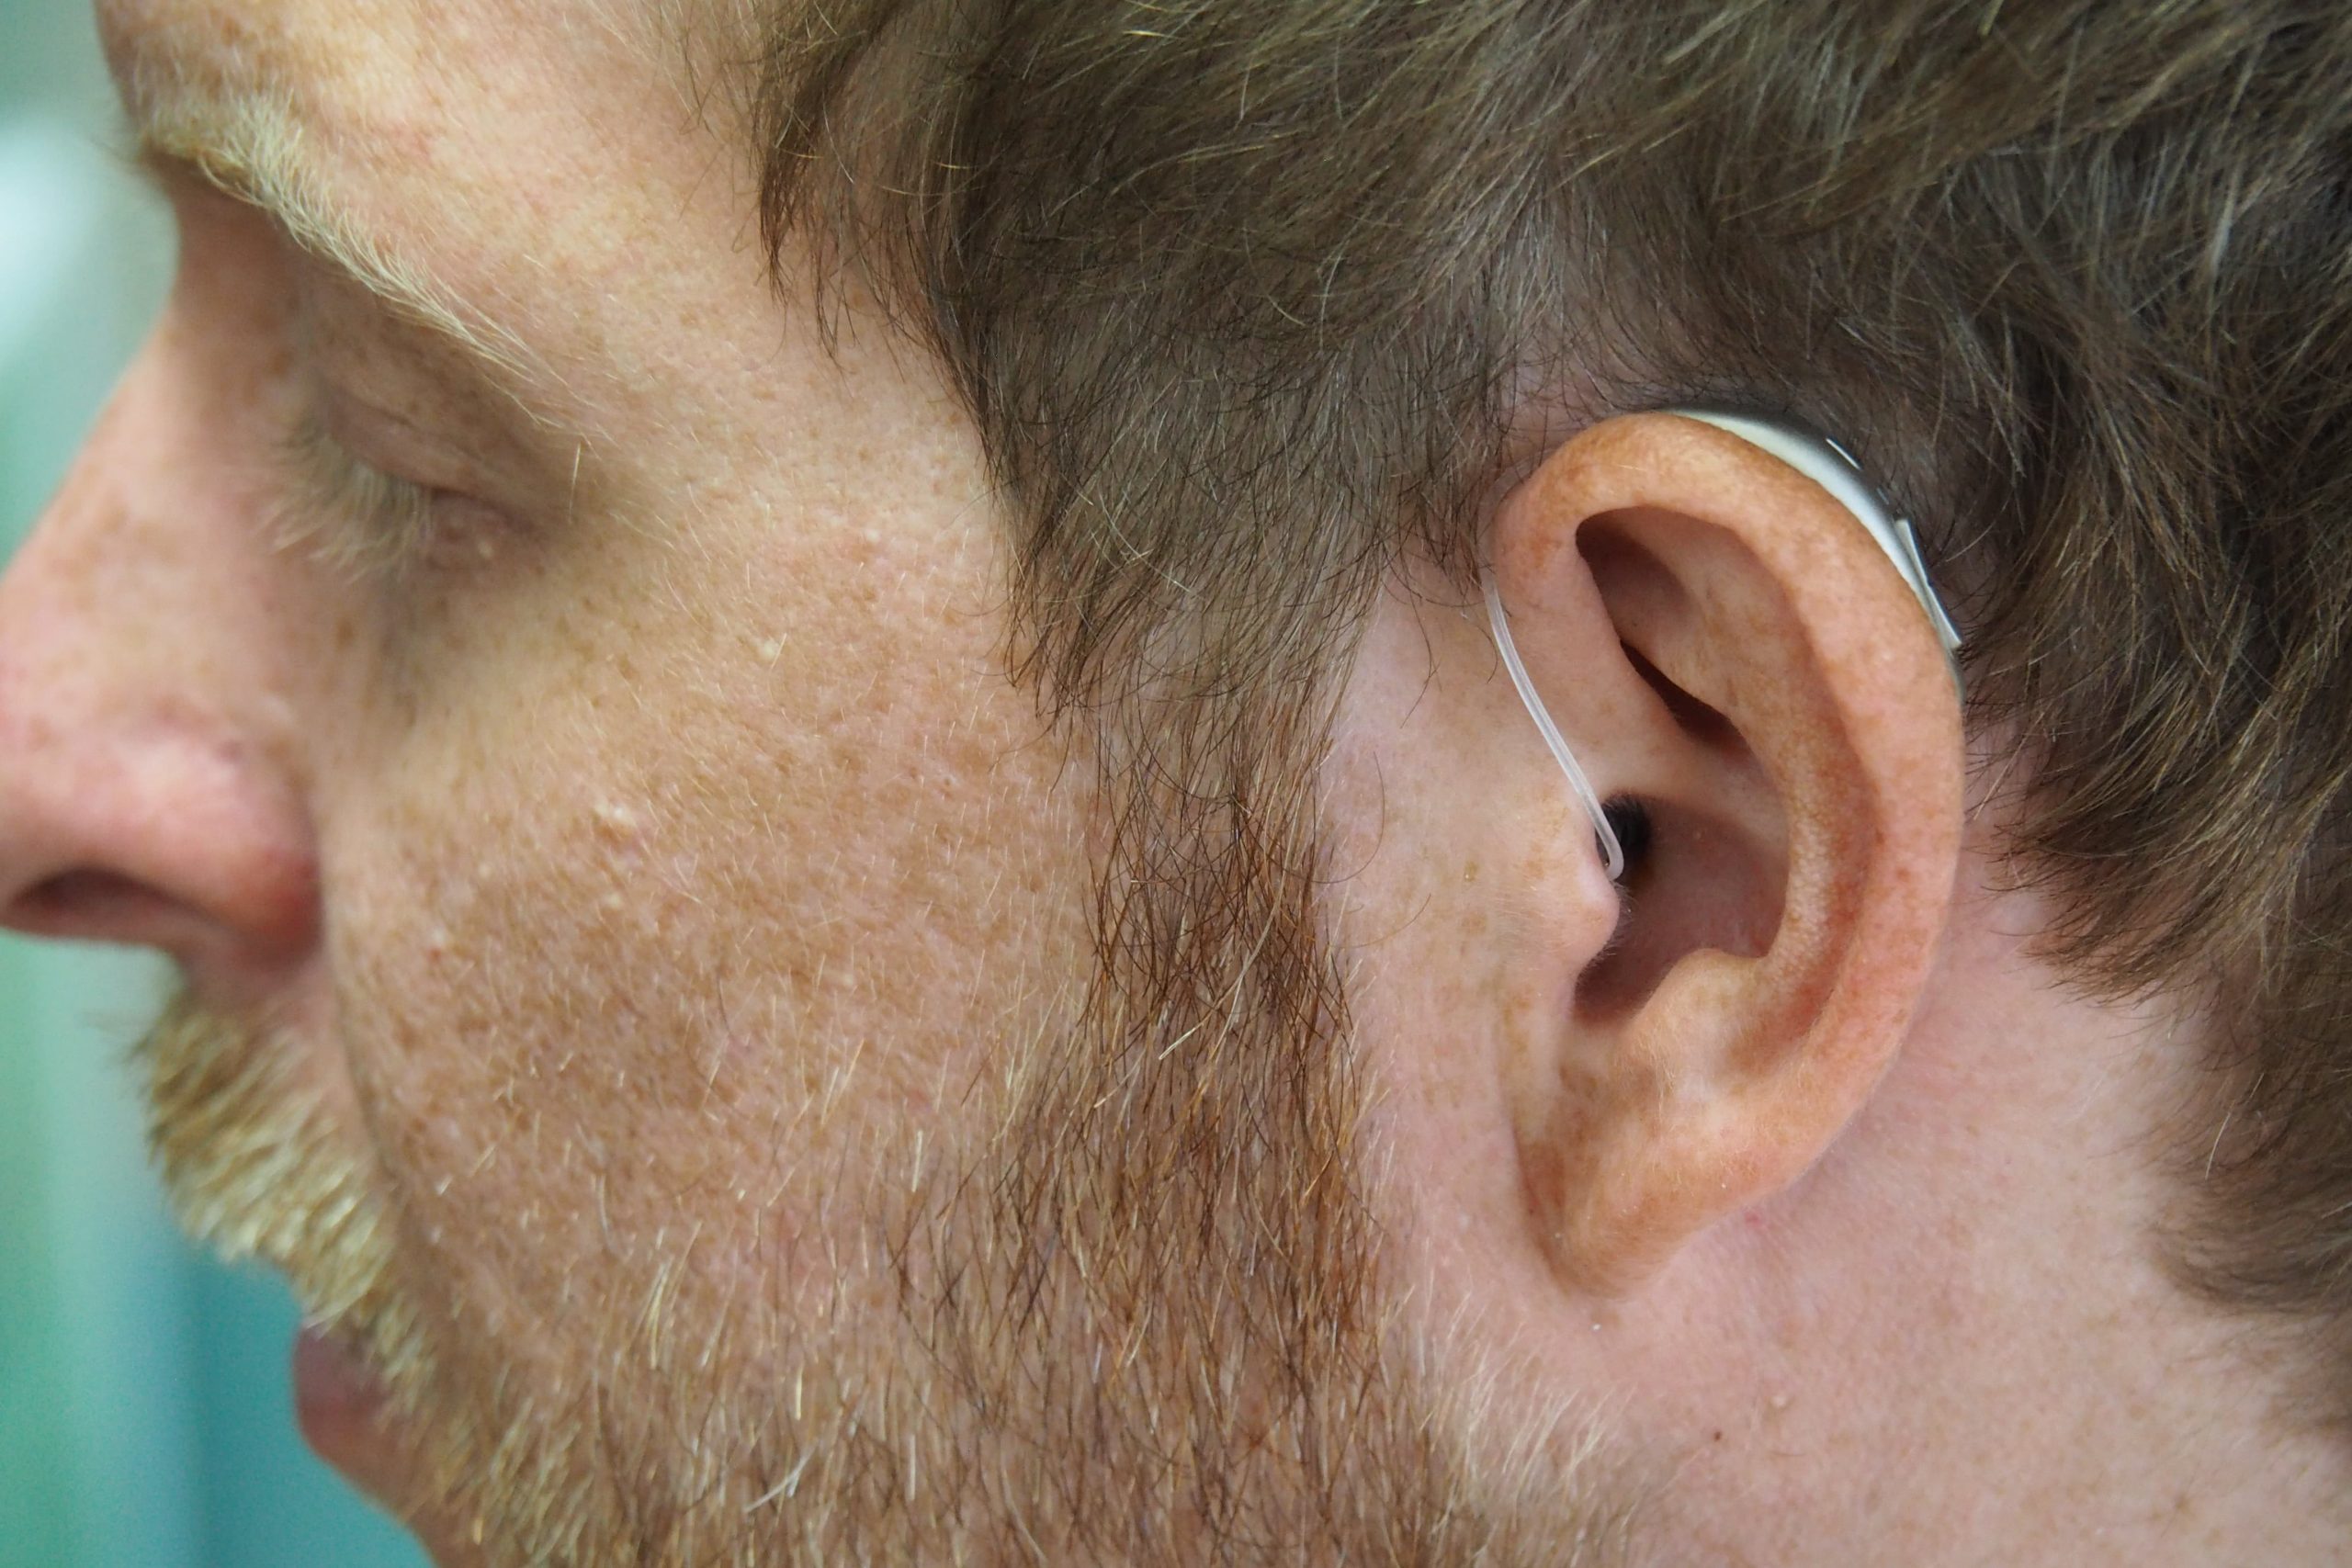 improving hearing loss 2022